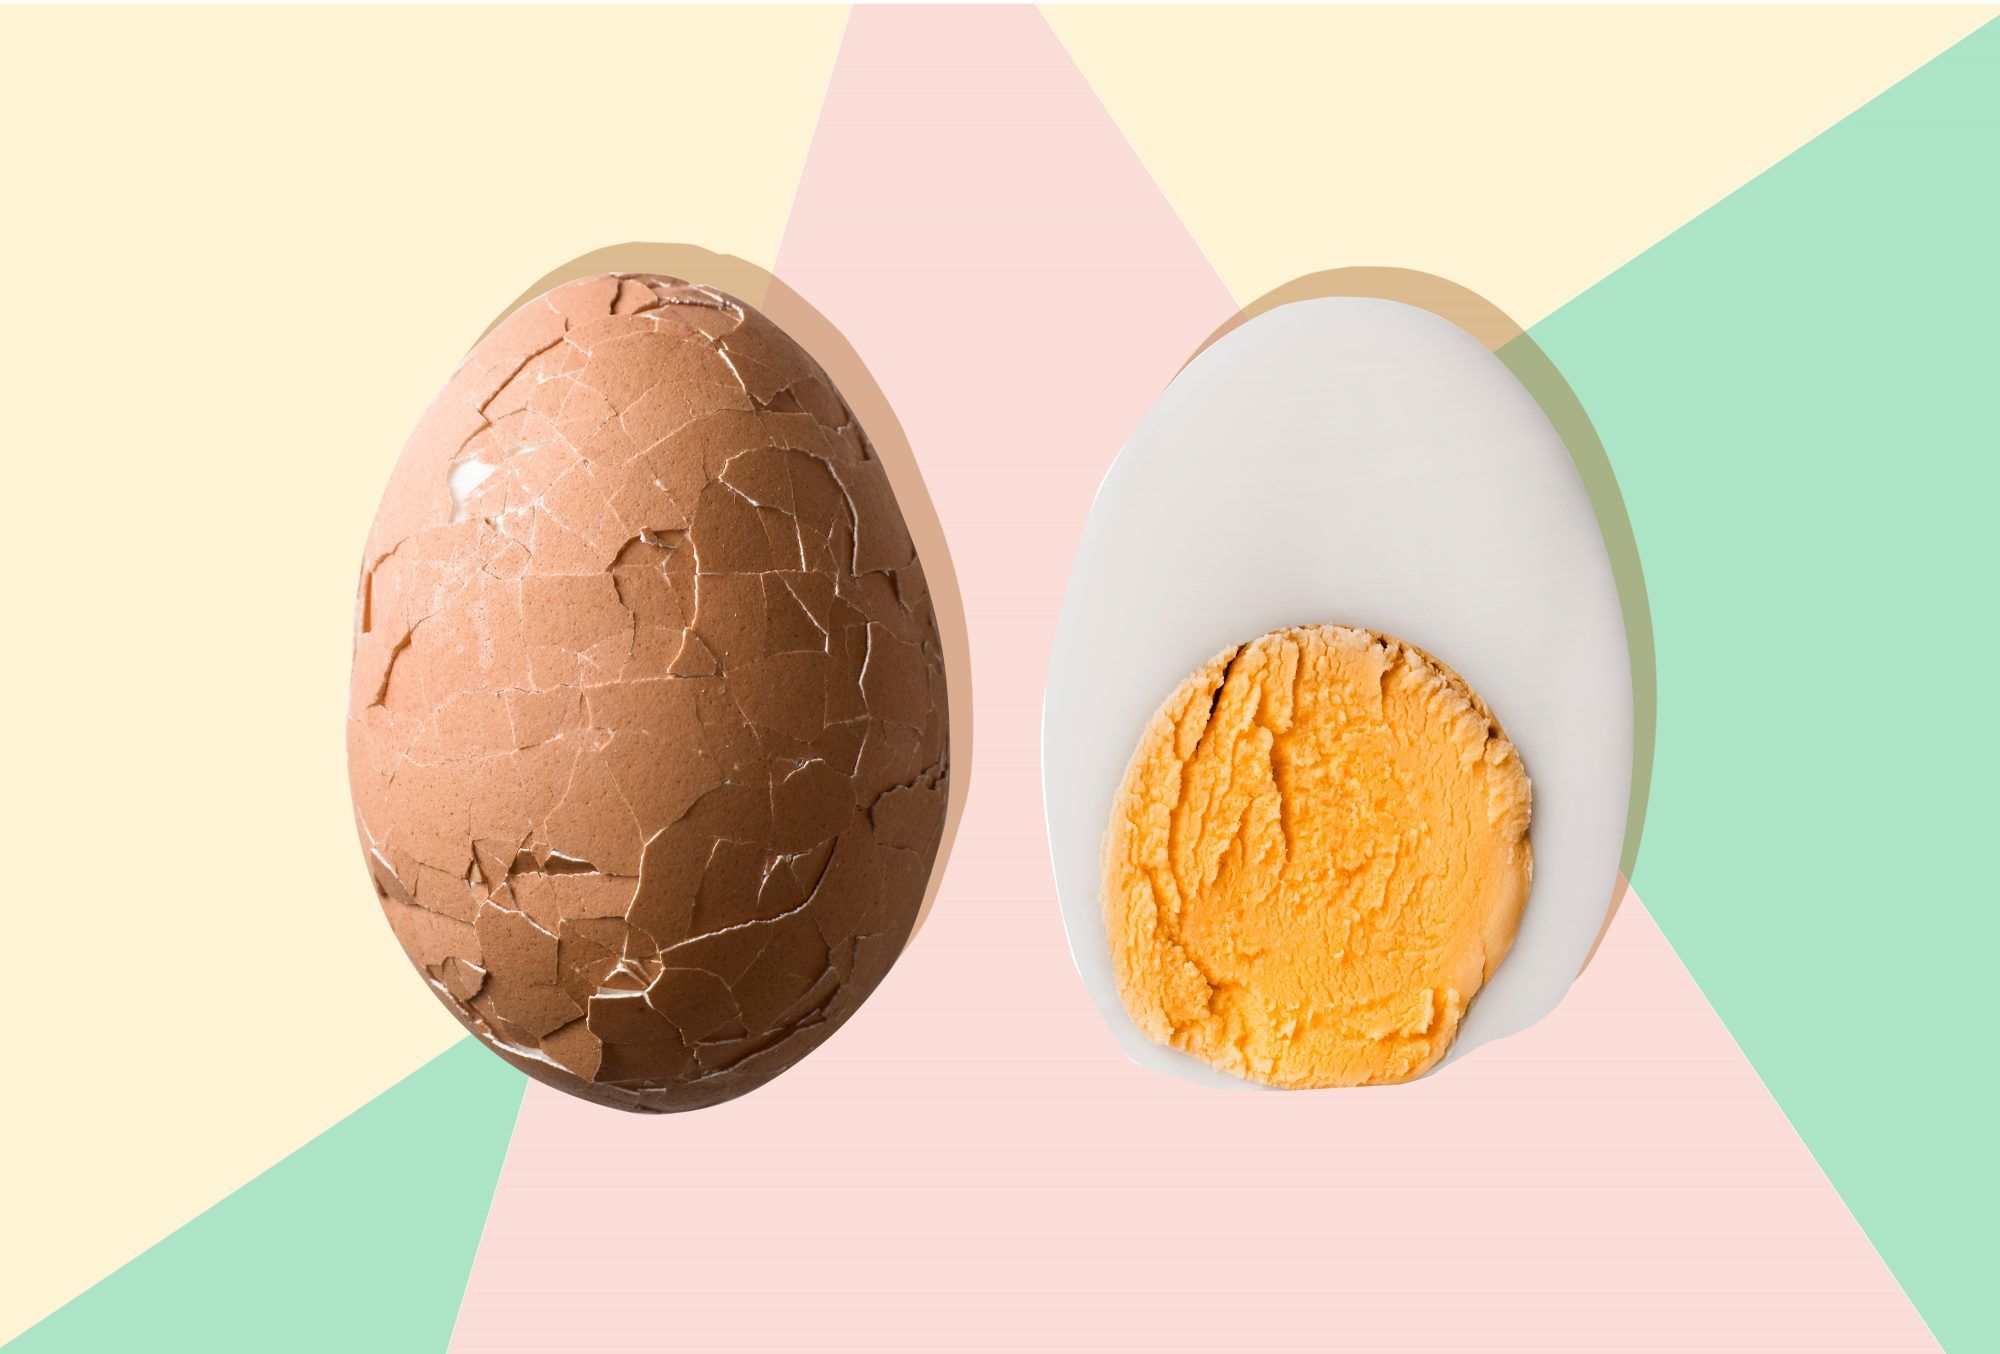 9 თვალის გასახსნელად უზუსტობა, რომელსაც ალბათ მწამს კვერცხის ჭამის შესახებ